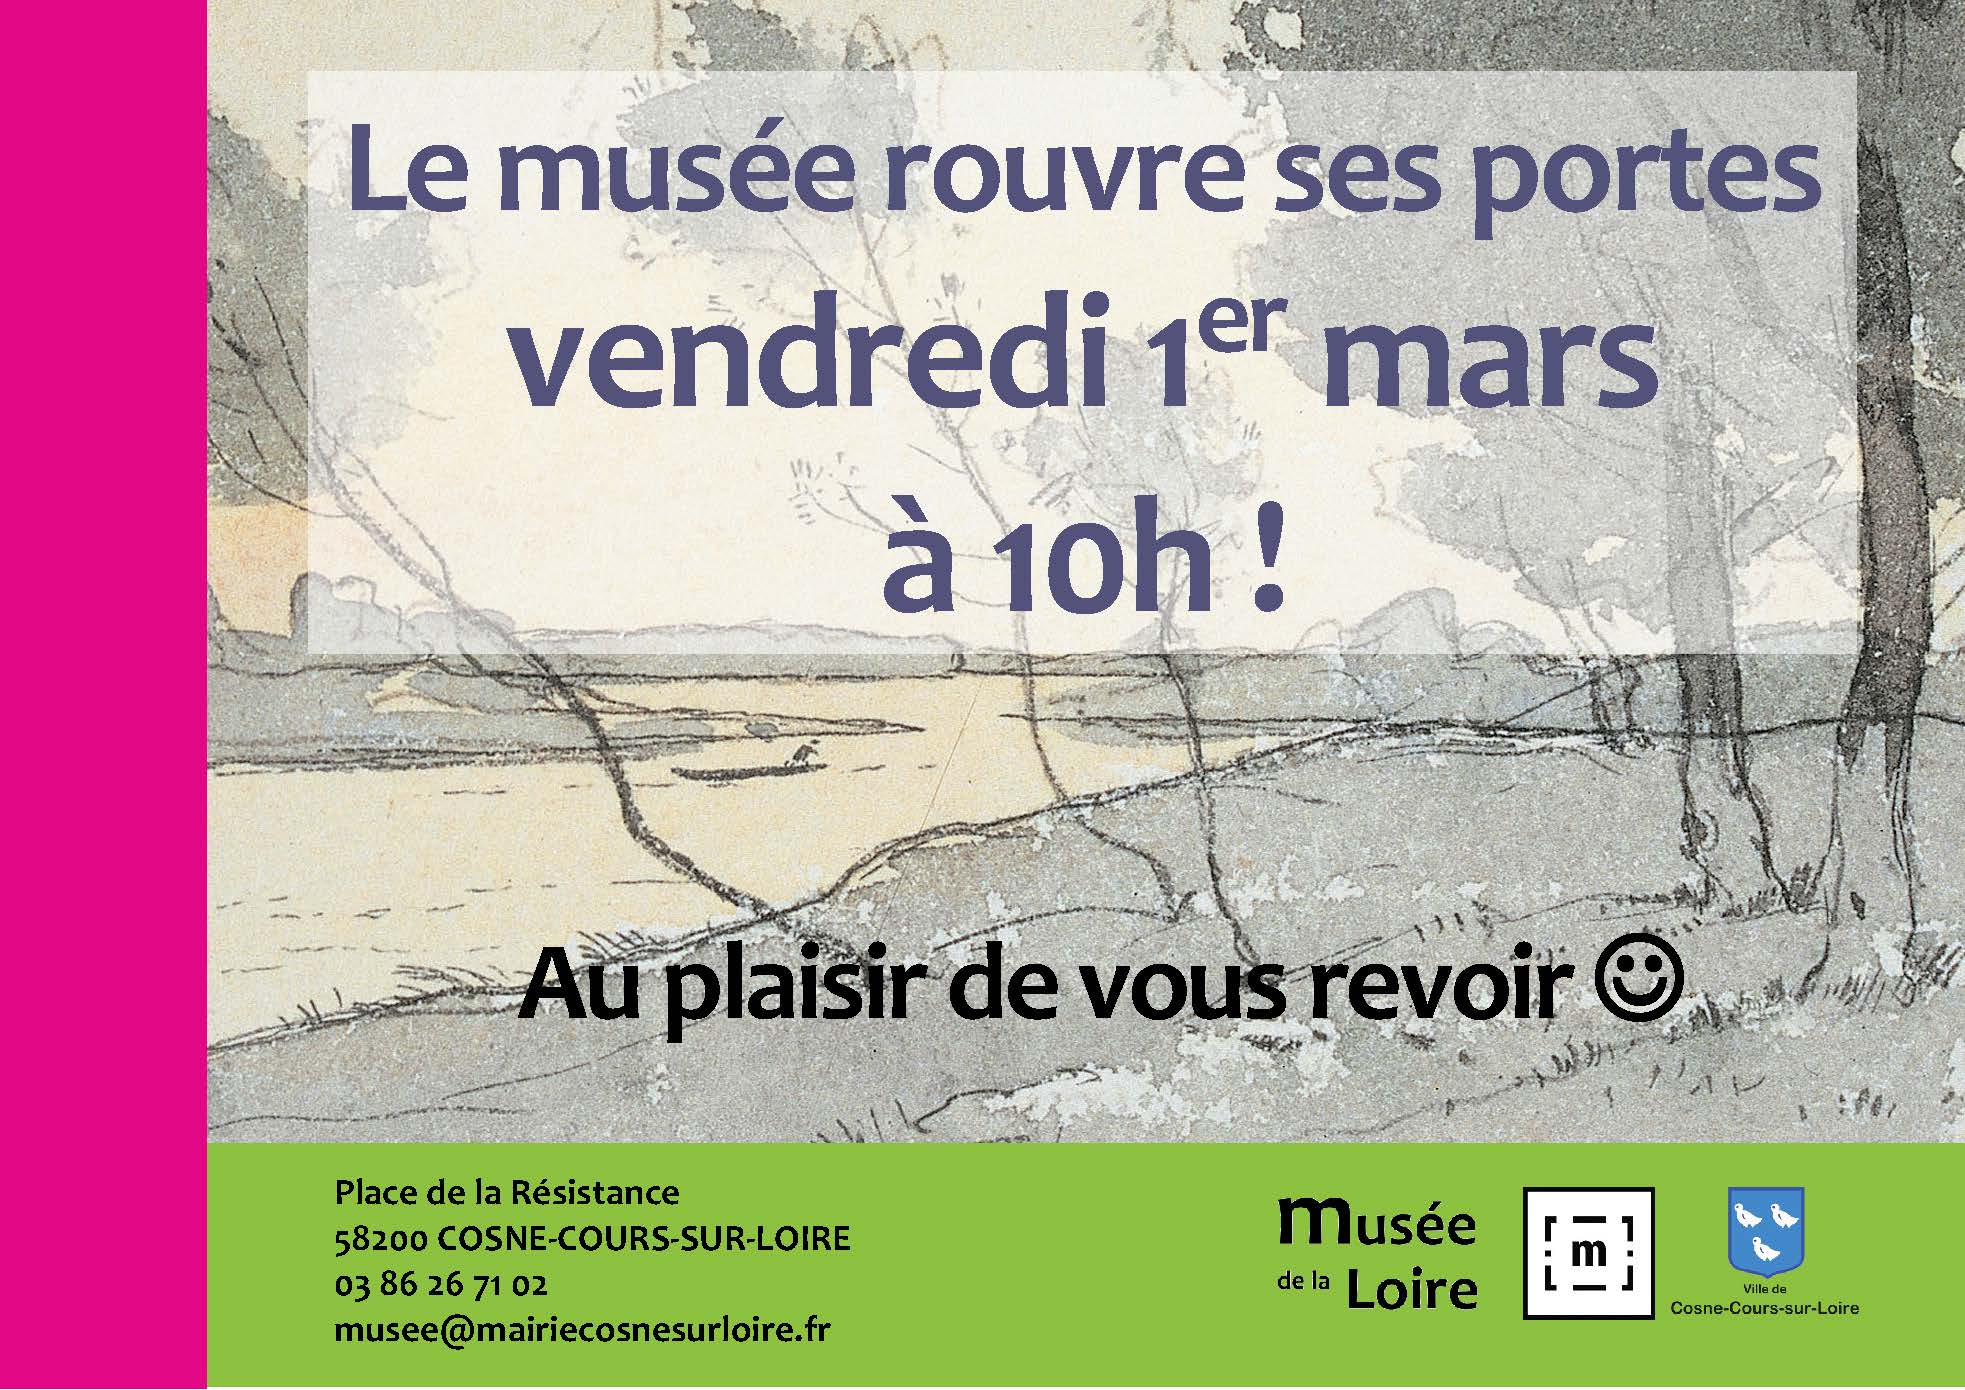 Réouverture du musée de la Loire de Cosne-Cours-sur-Loire le vendredi 1er mars à 10h